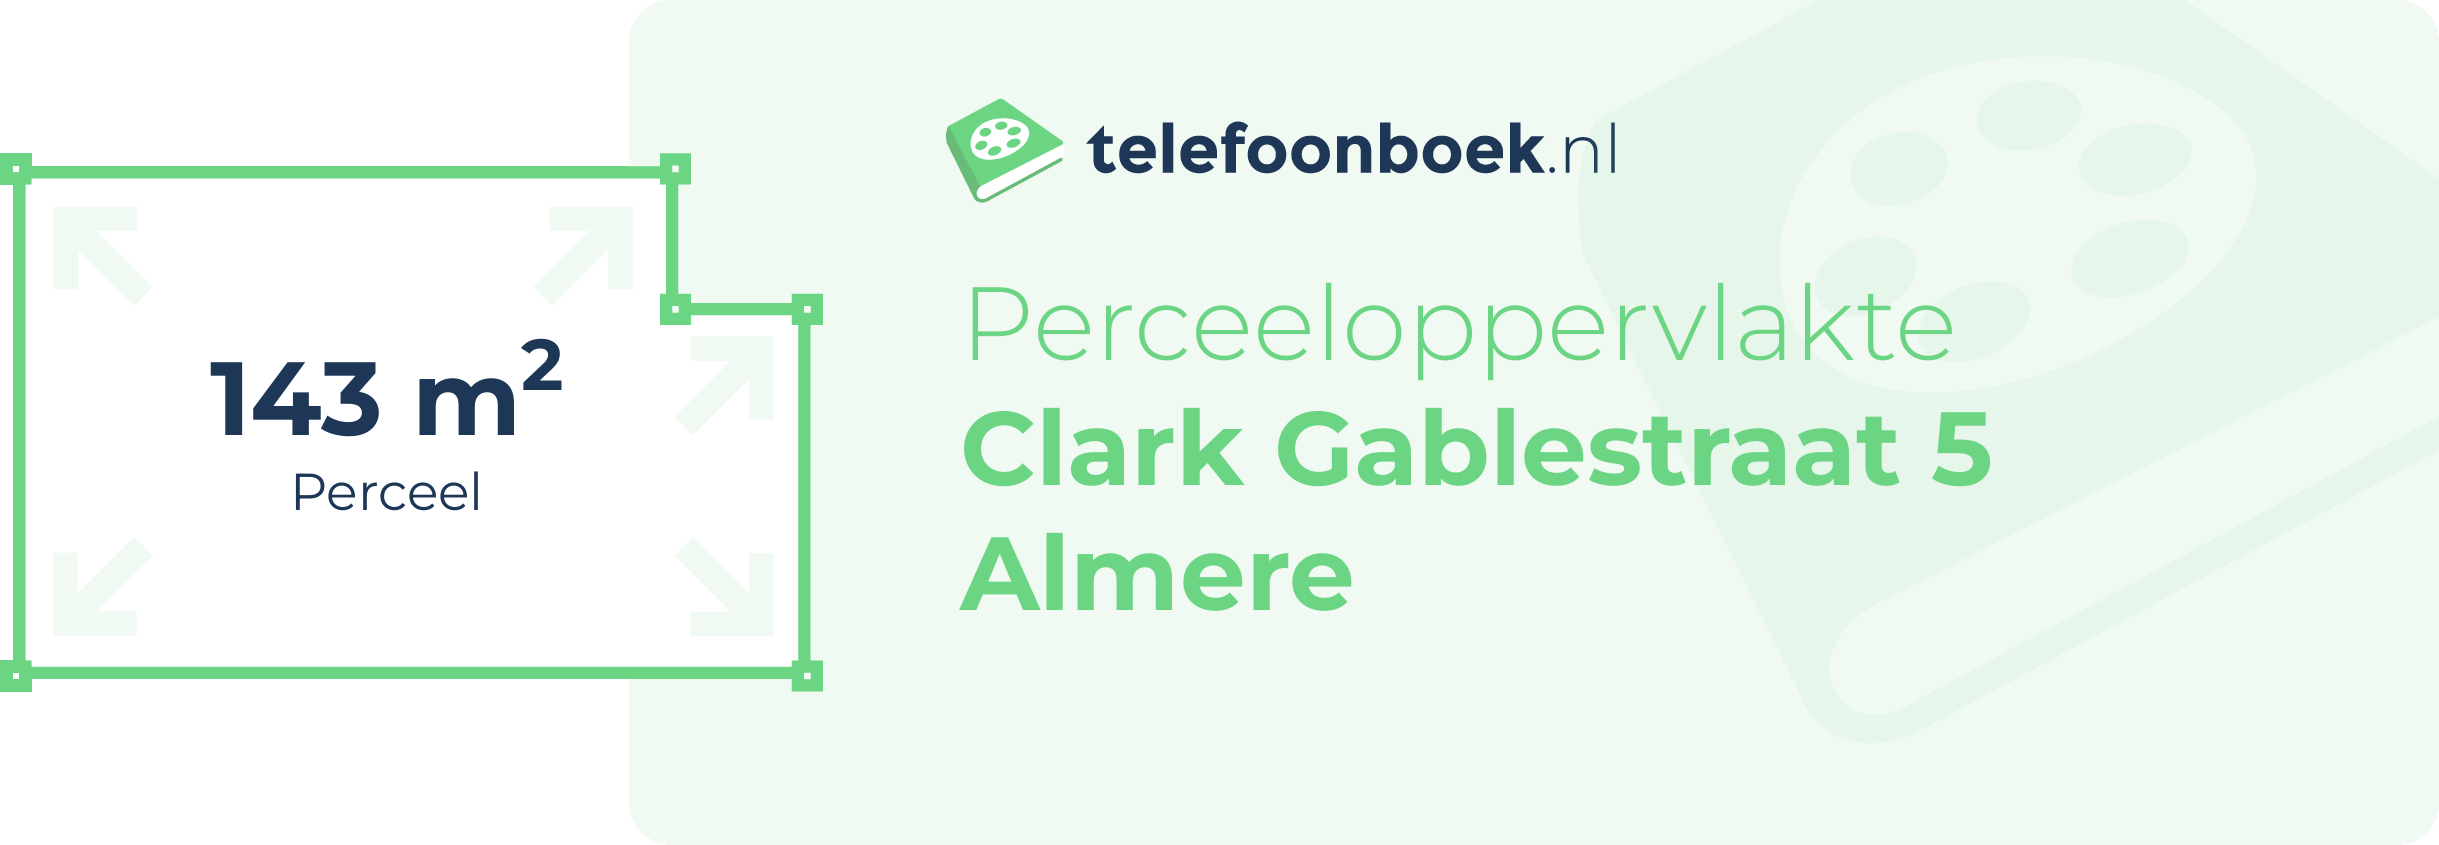 Perceeloppervlakte Clark Gablestraat 5 Almere